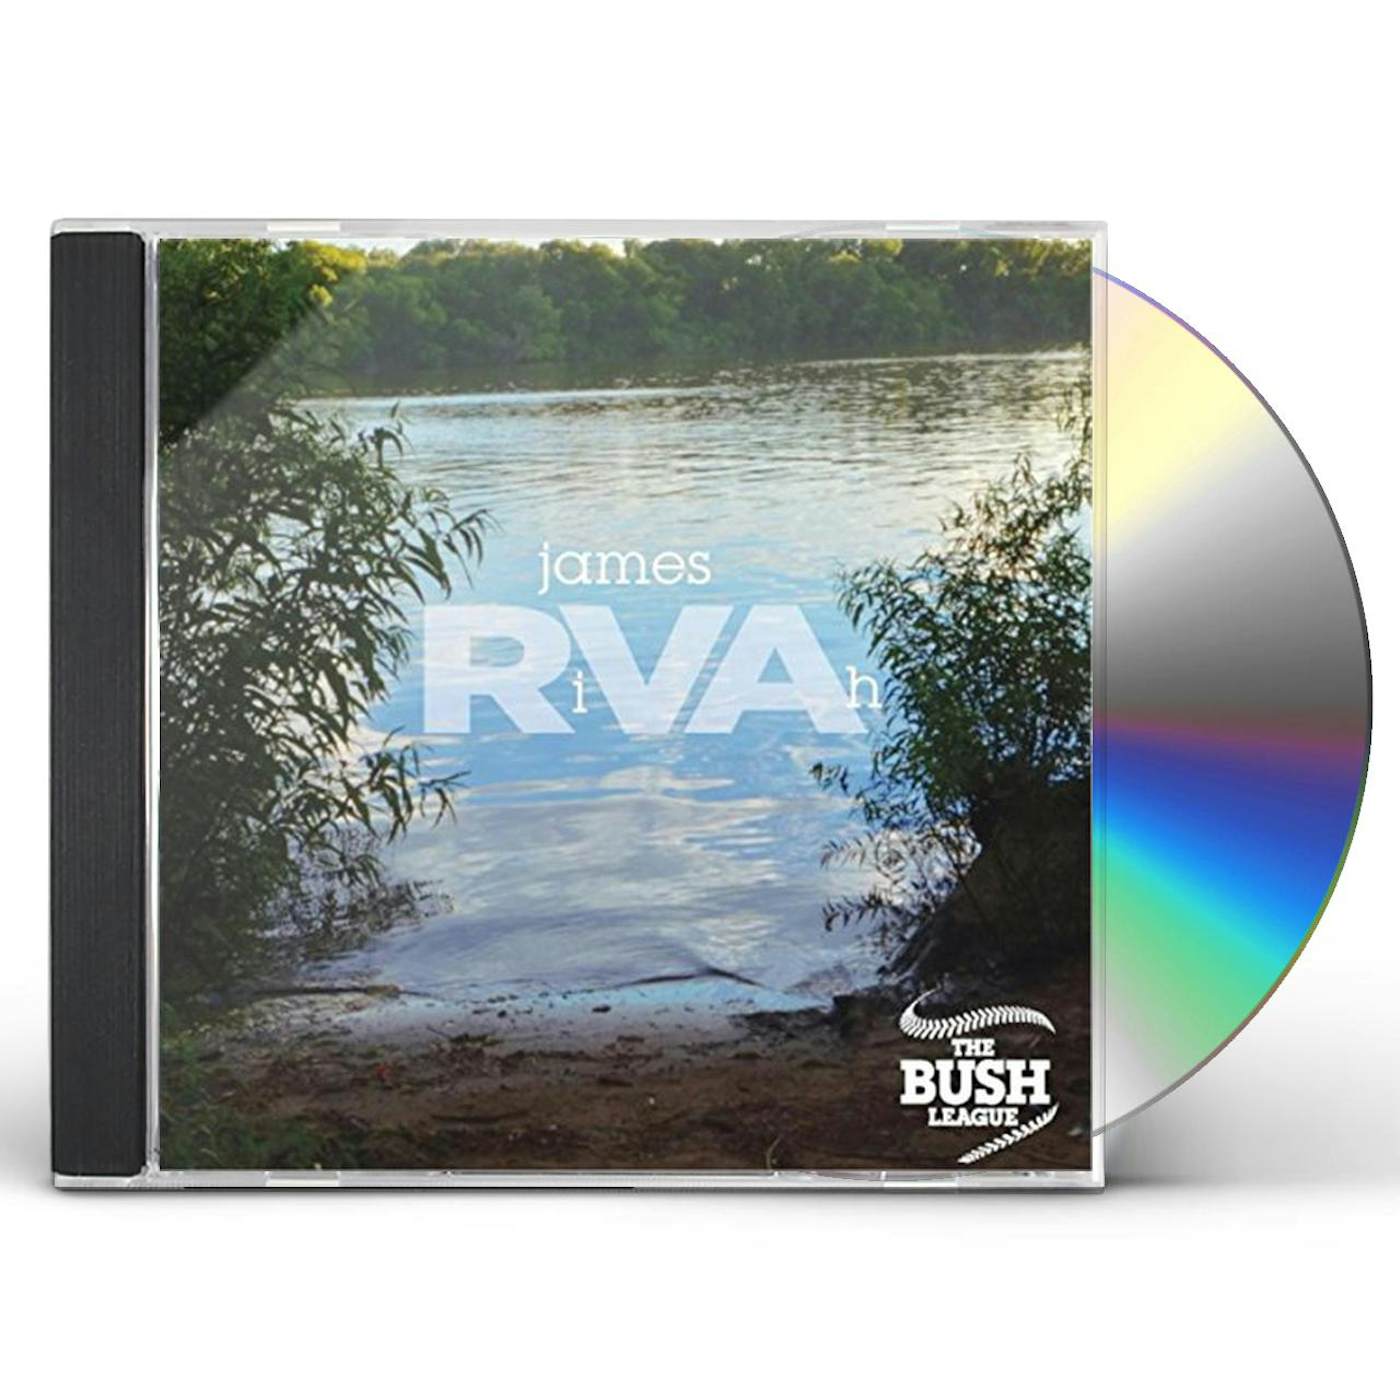 Bush League JAMES RIVAH CD